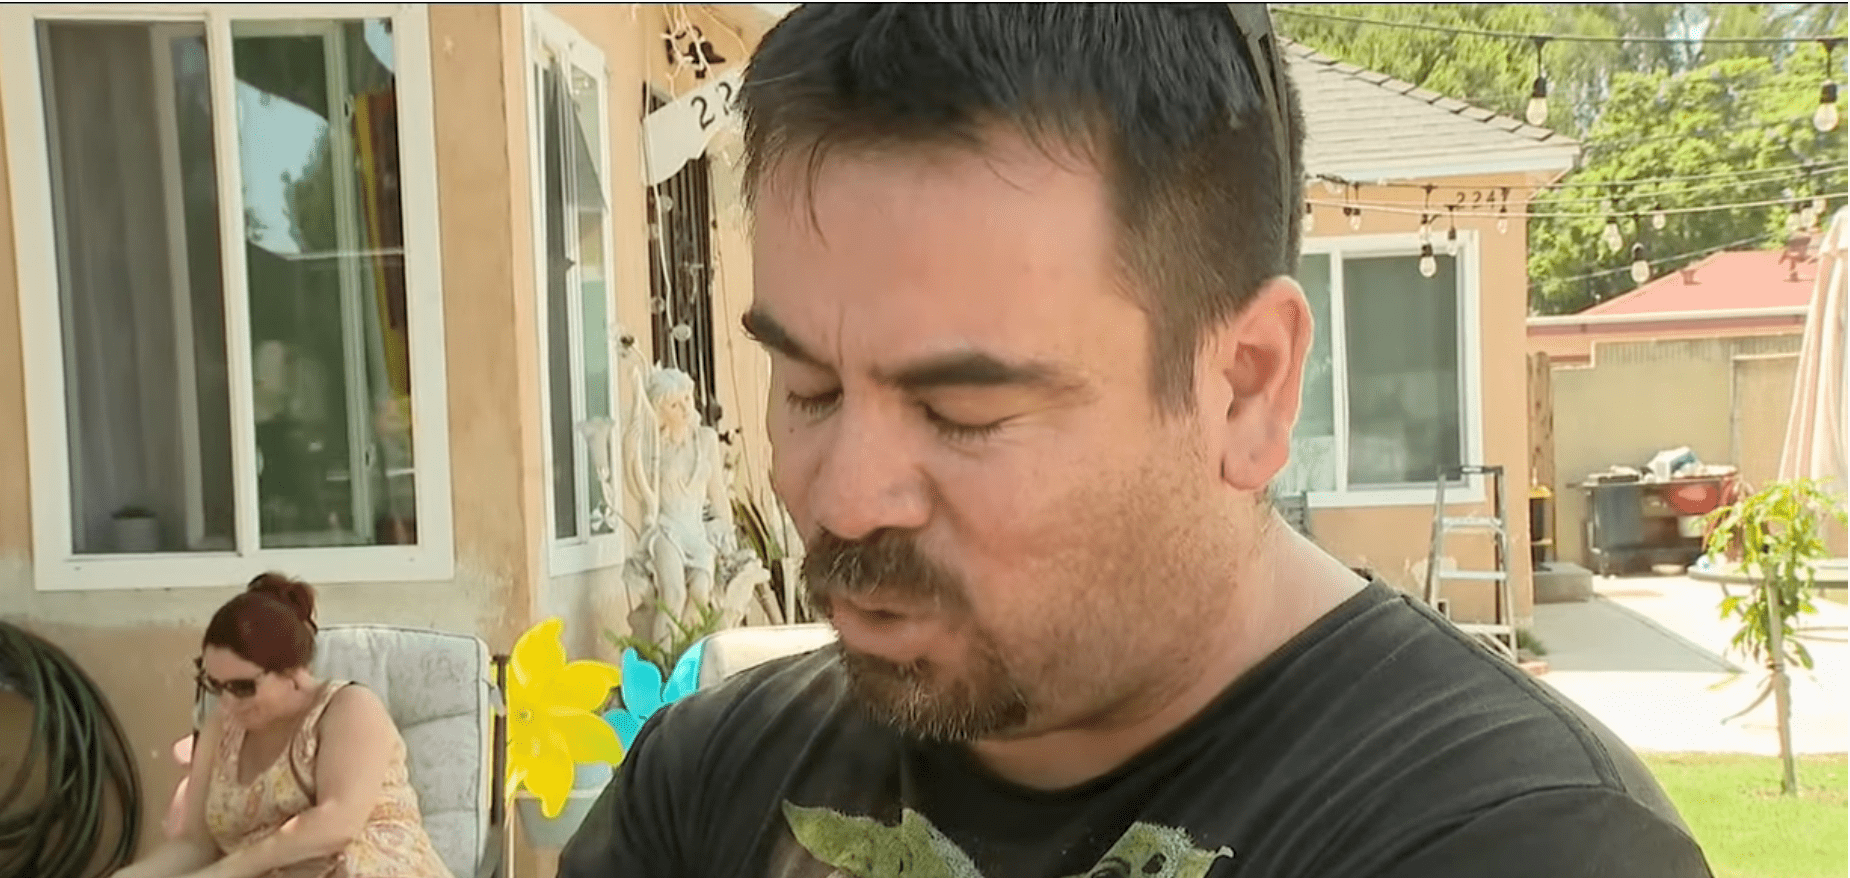 Der Vater des 7-jährigen Gabriel, Francisco Garate, spricht mit der Presse | Quelle: Youtube/FOX 11 Los Angeles